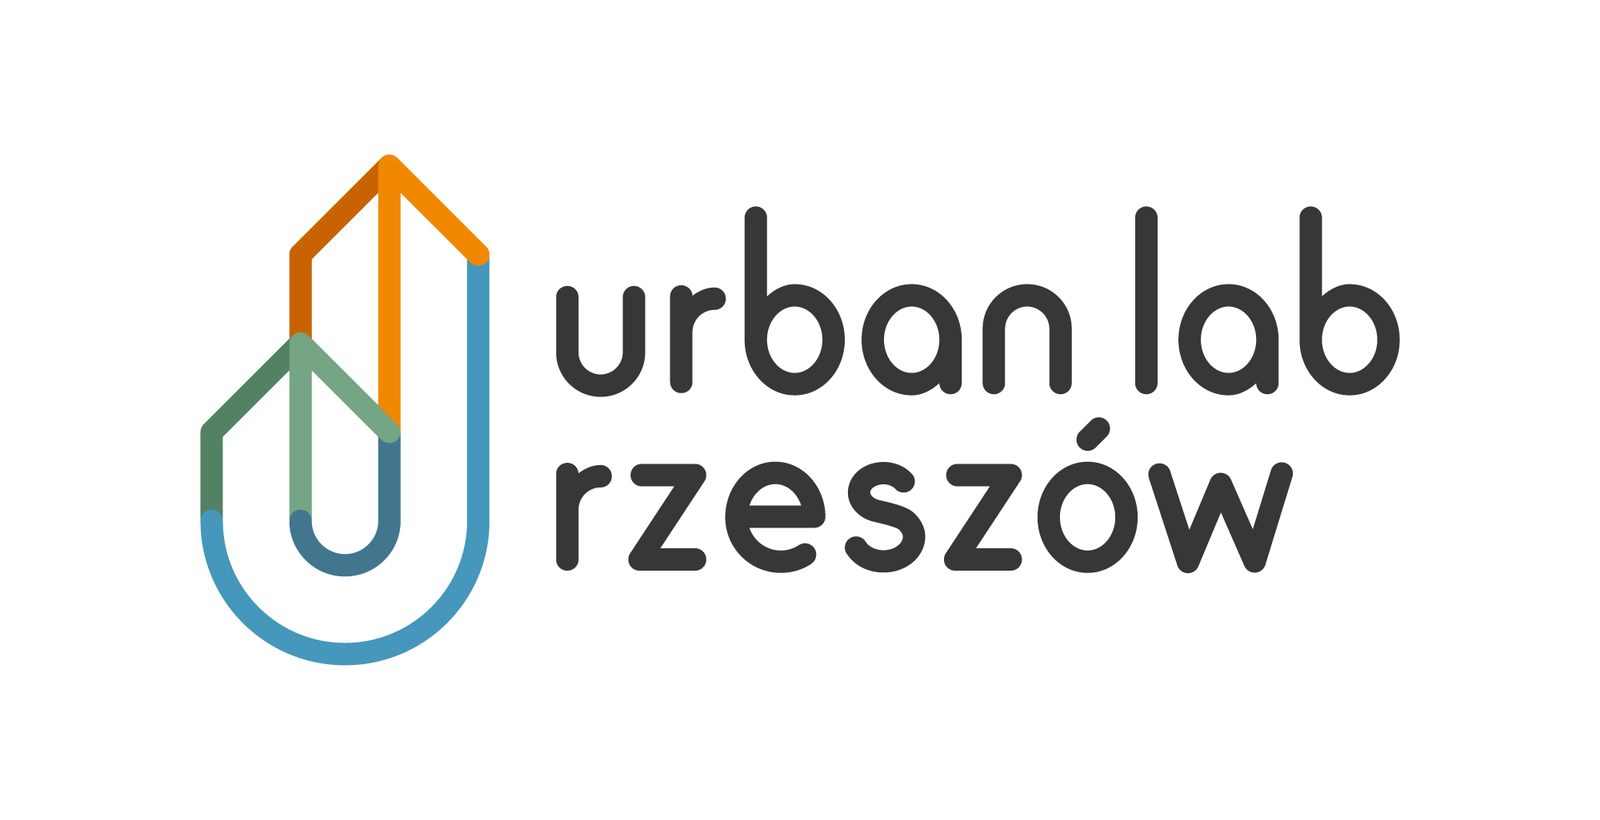 urbanlabrzeszow_logo.jpg